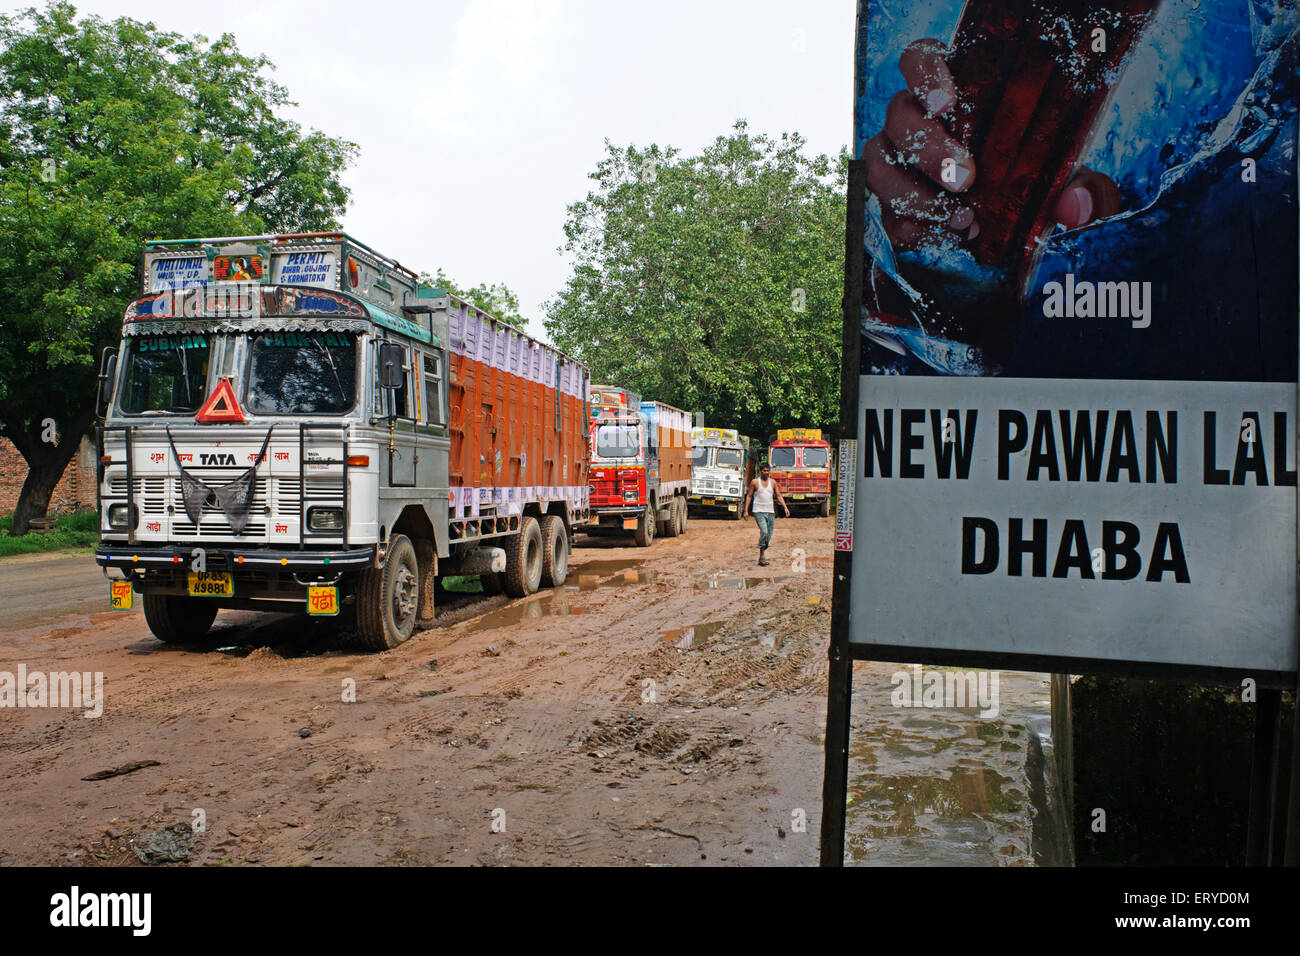 Parcheggio per camion , pegno nuovo lal dhaba ; ristorante a bordo strada , Uttar Pradesh ; India , asia Foto Stock